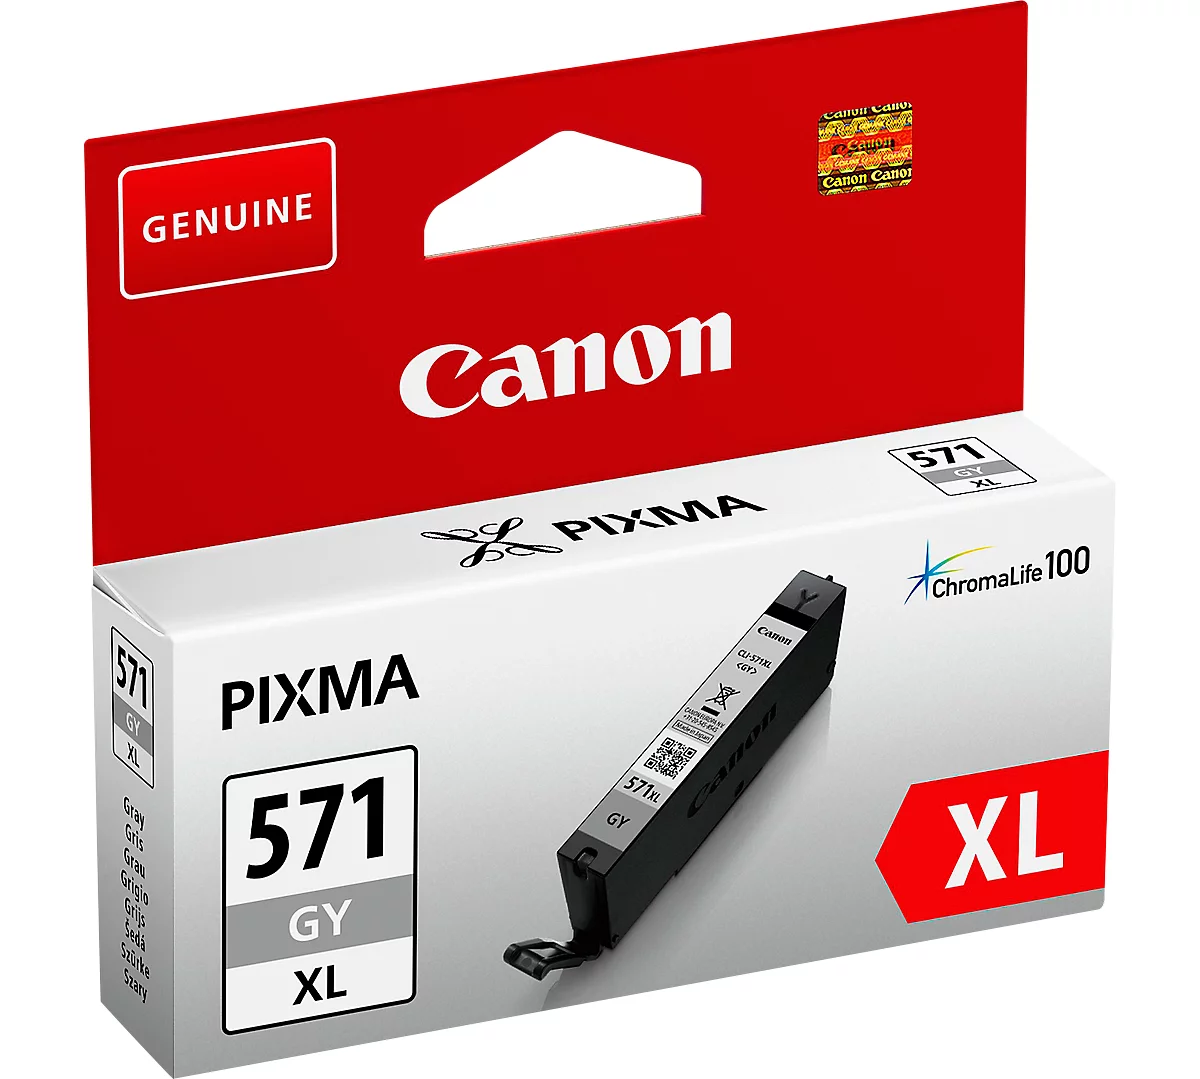 Acheter Marque propre Canon PG-545XL / CL-546XL Cartouche d'encre Noir + 3  couleurs Multipack Grande capacité ?